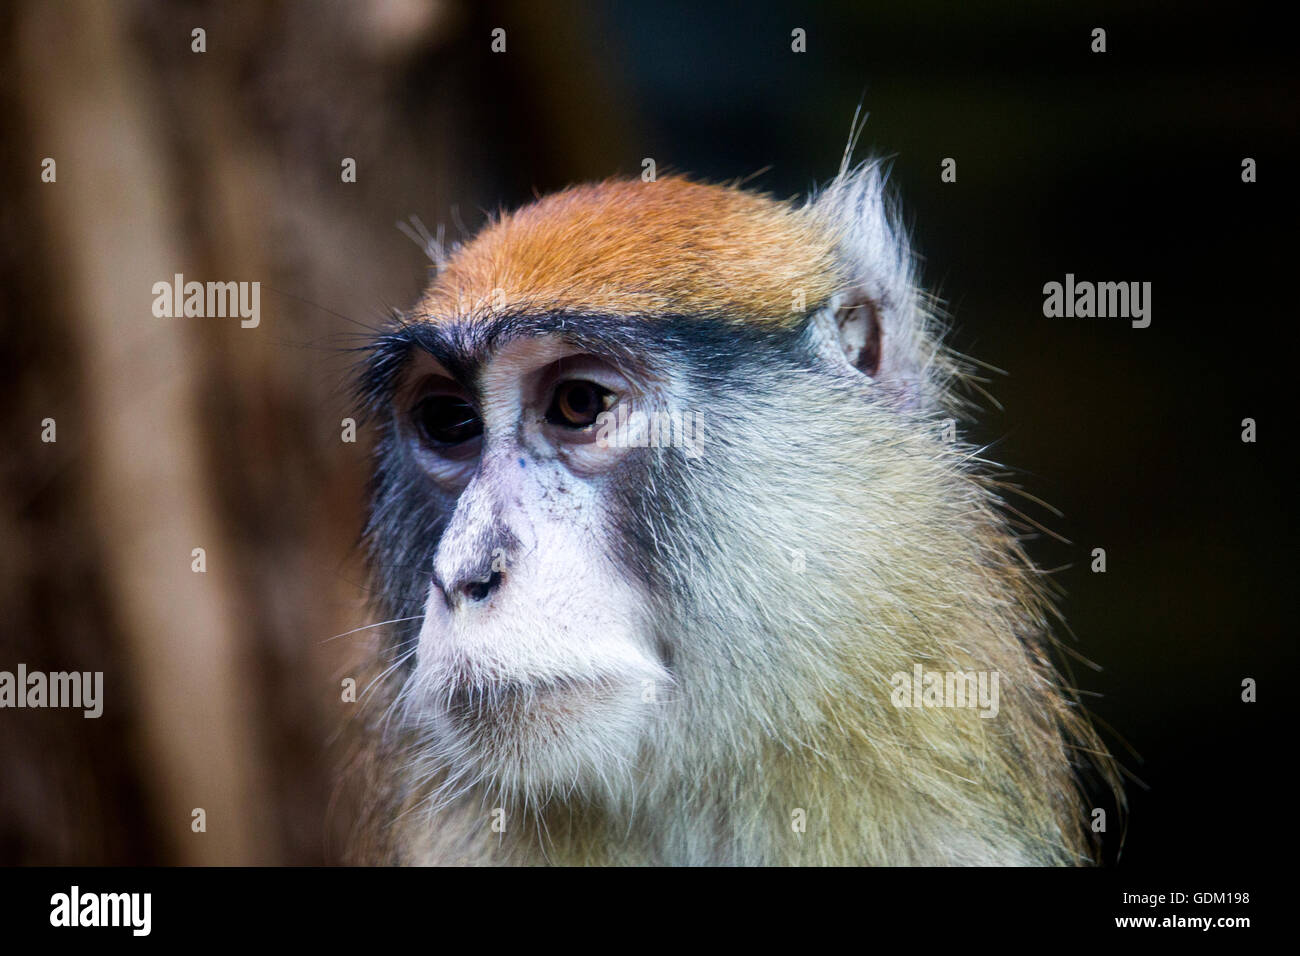 Patas monkey portrait Stock Photo